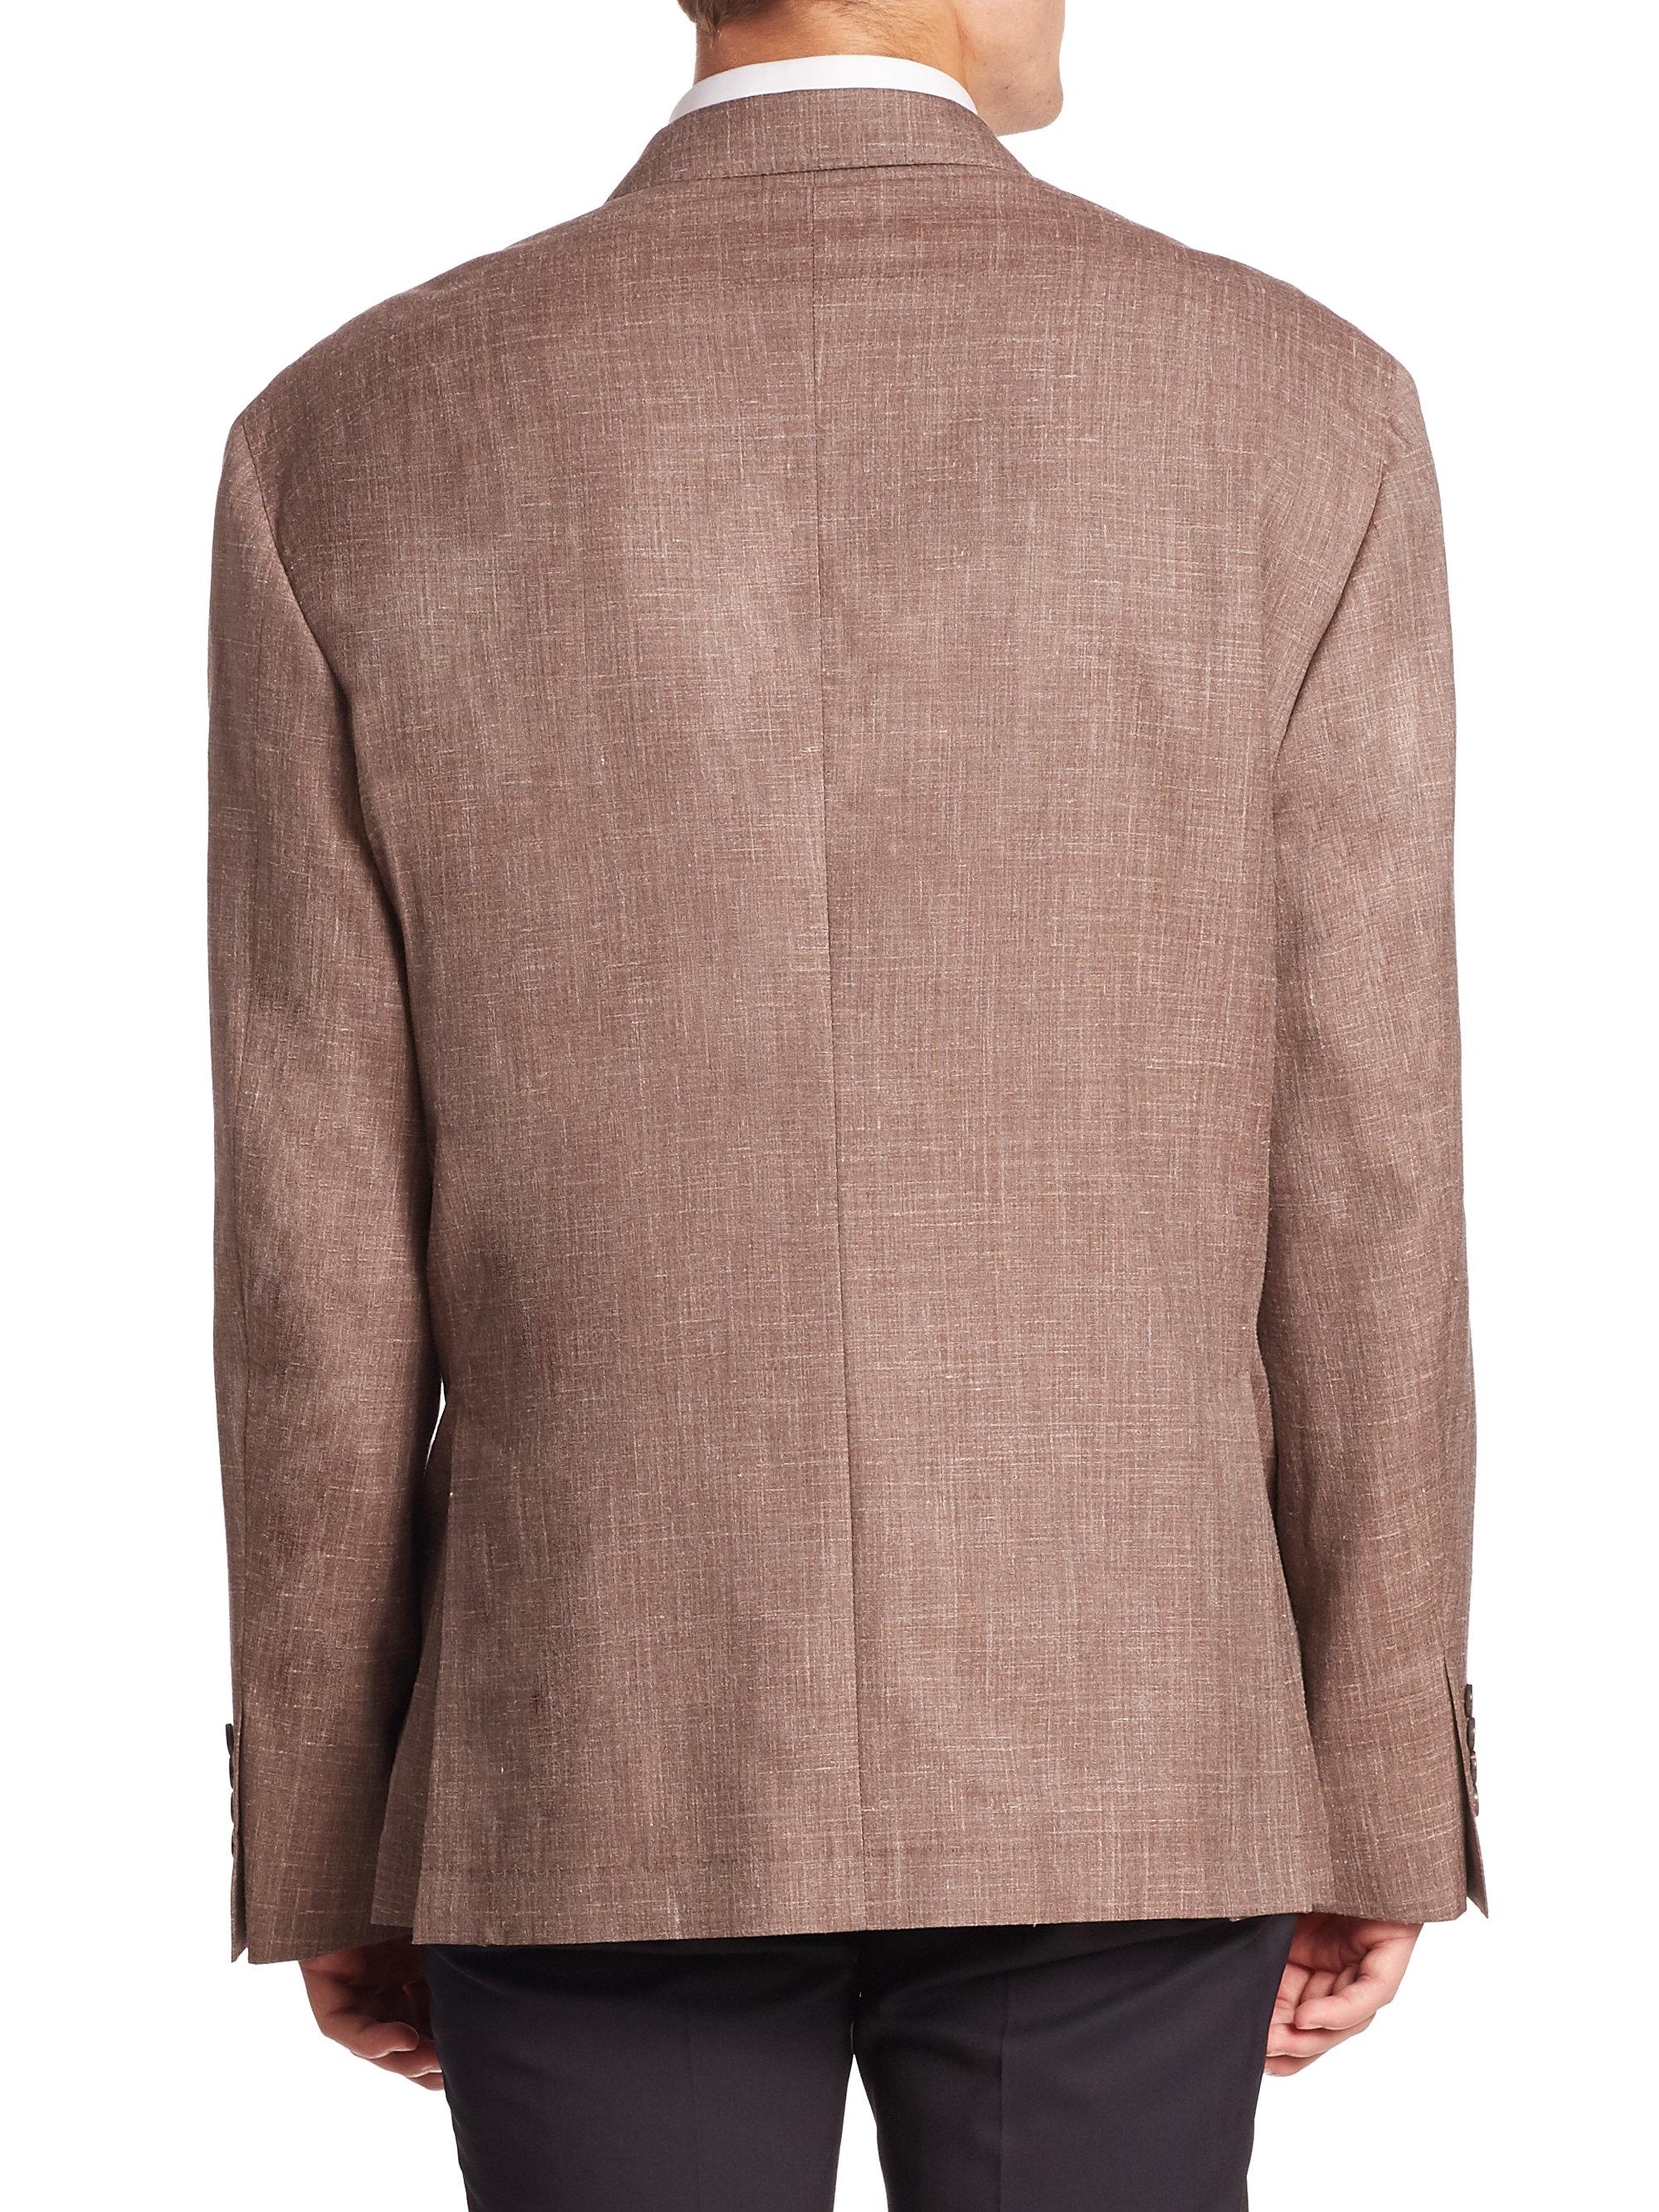 Brunello Cucinelli Wool, Silk & Linen Blazer in Brown for Men - Lyst